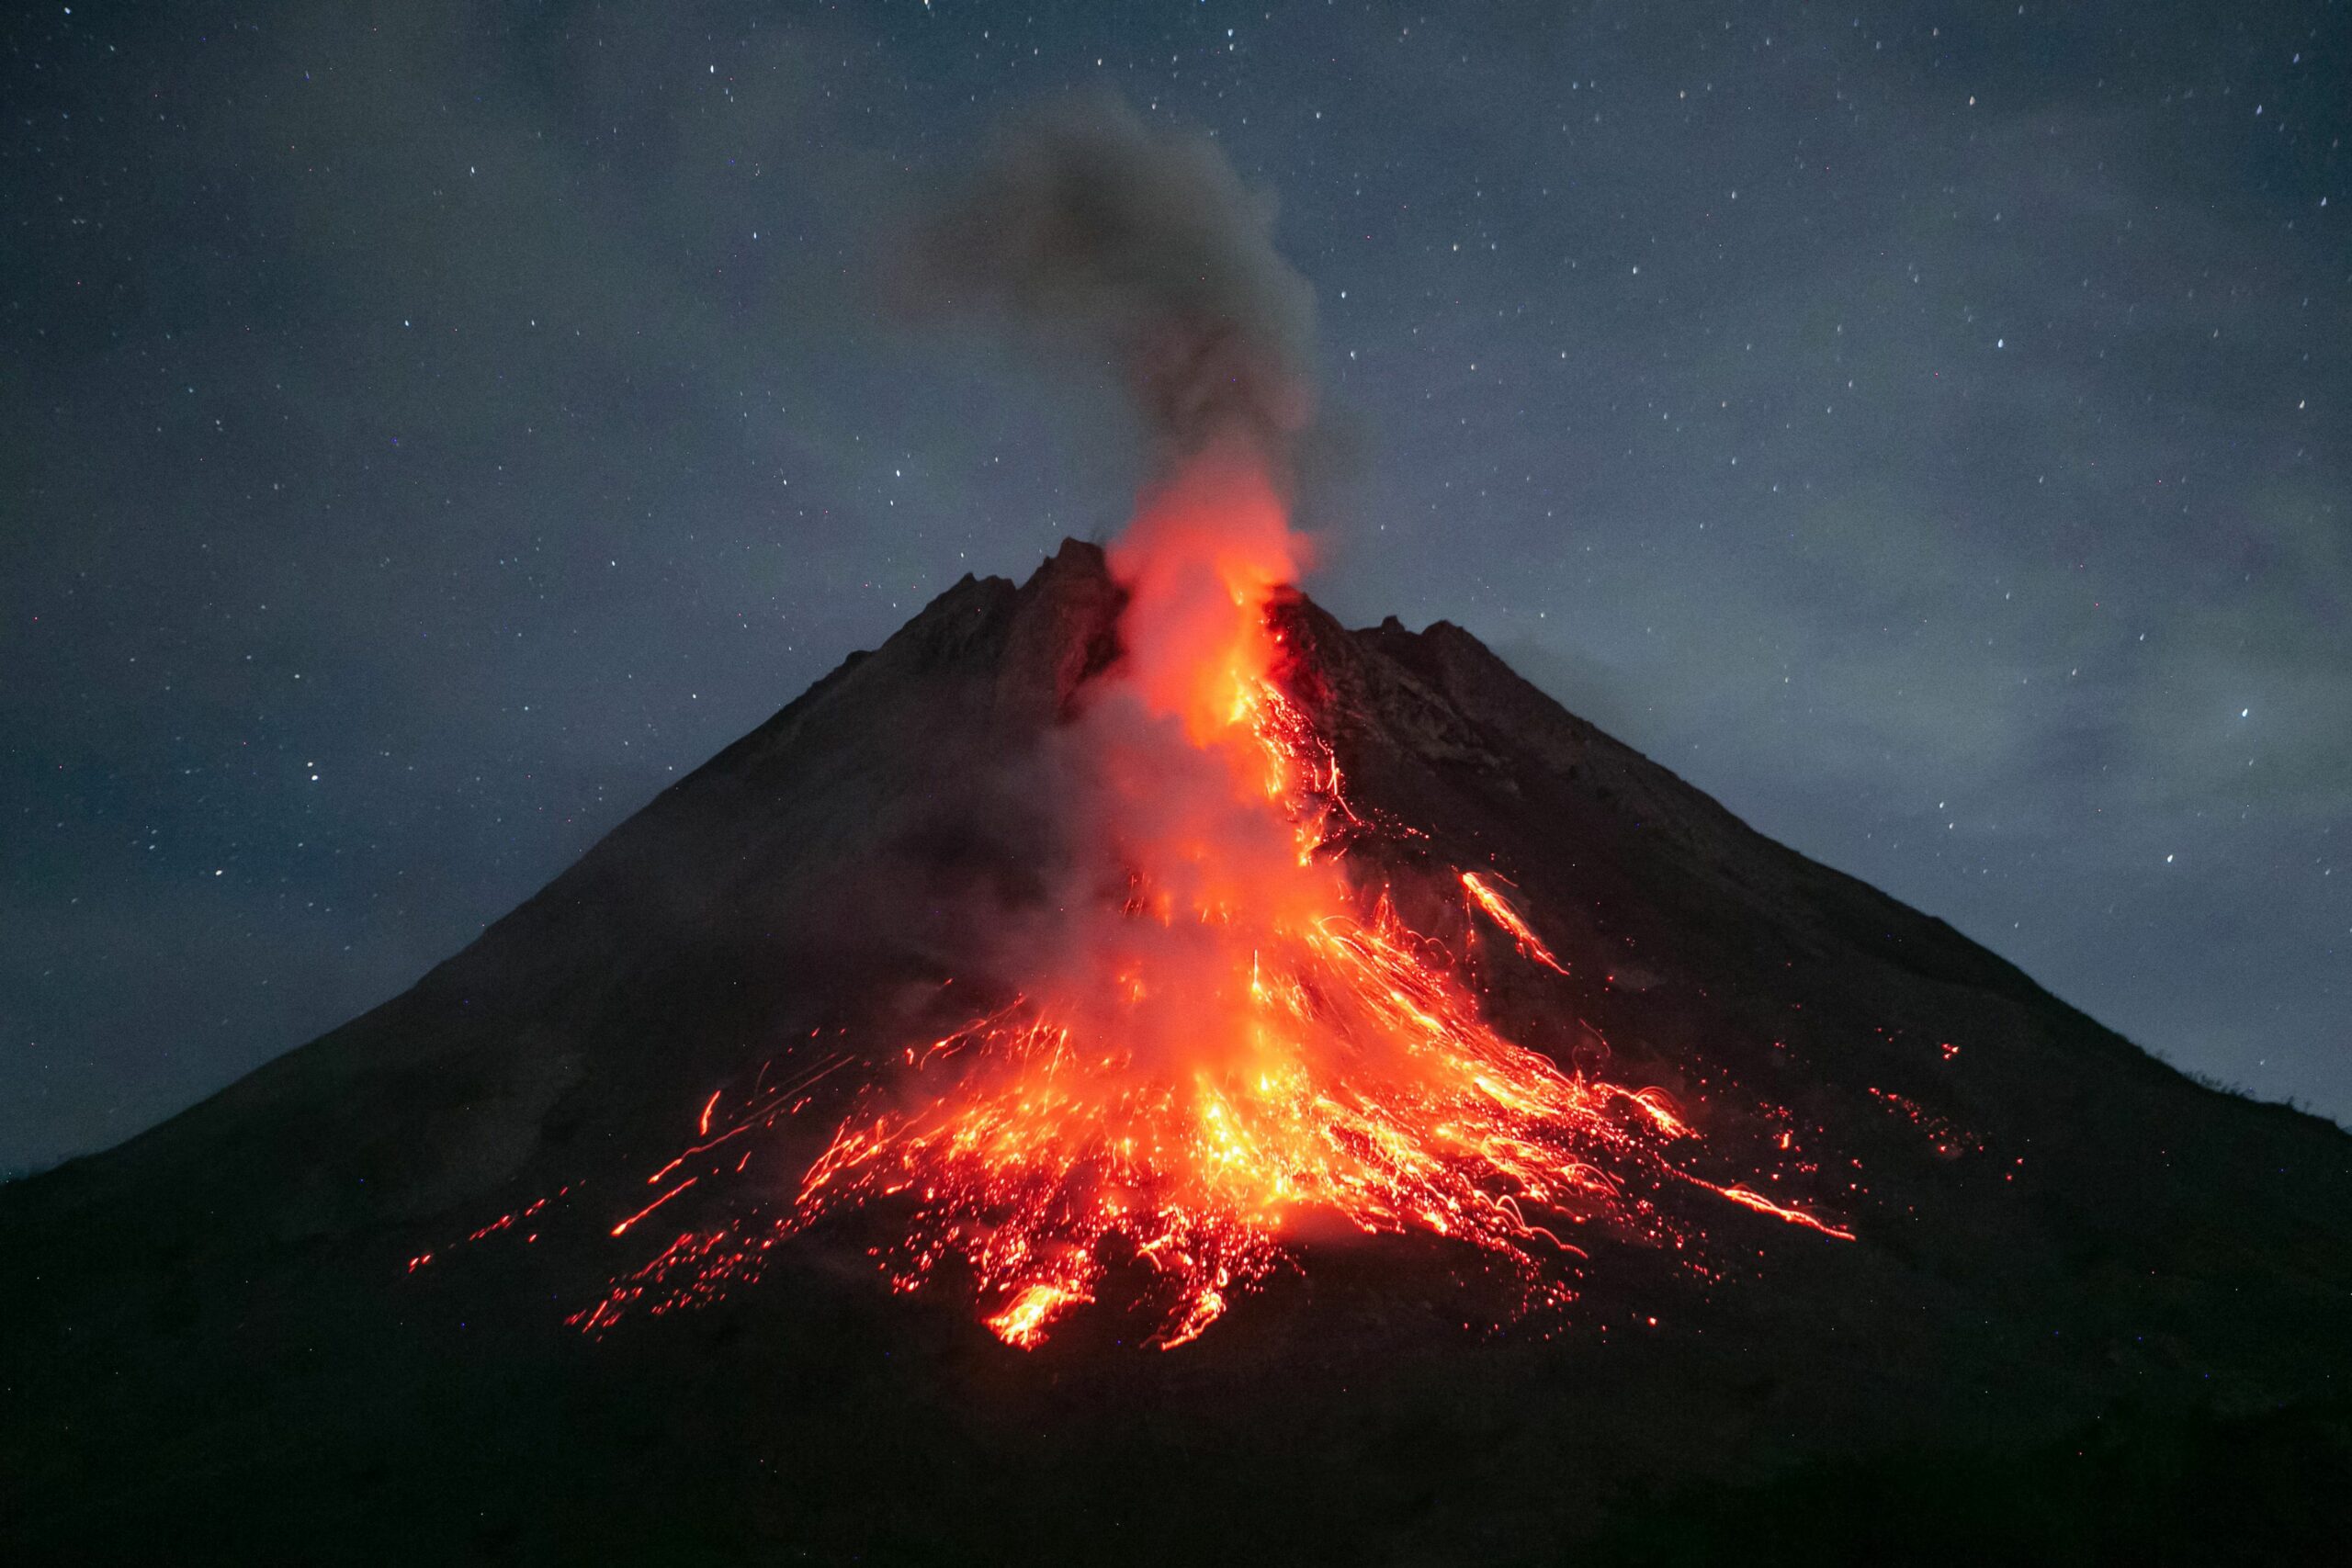 Indonesia’s Merapi volcano erupts, spewing ‘avalanche’ of lava | Borneo ...